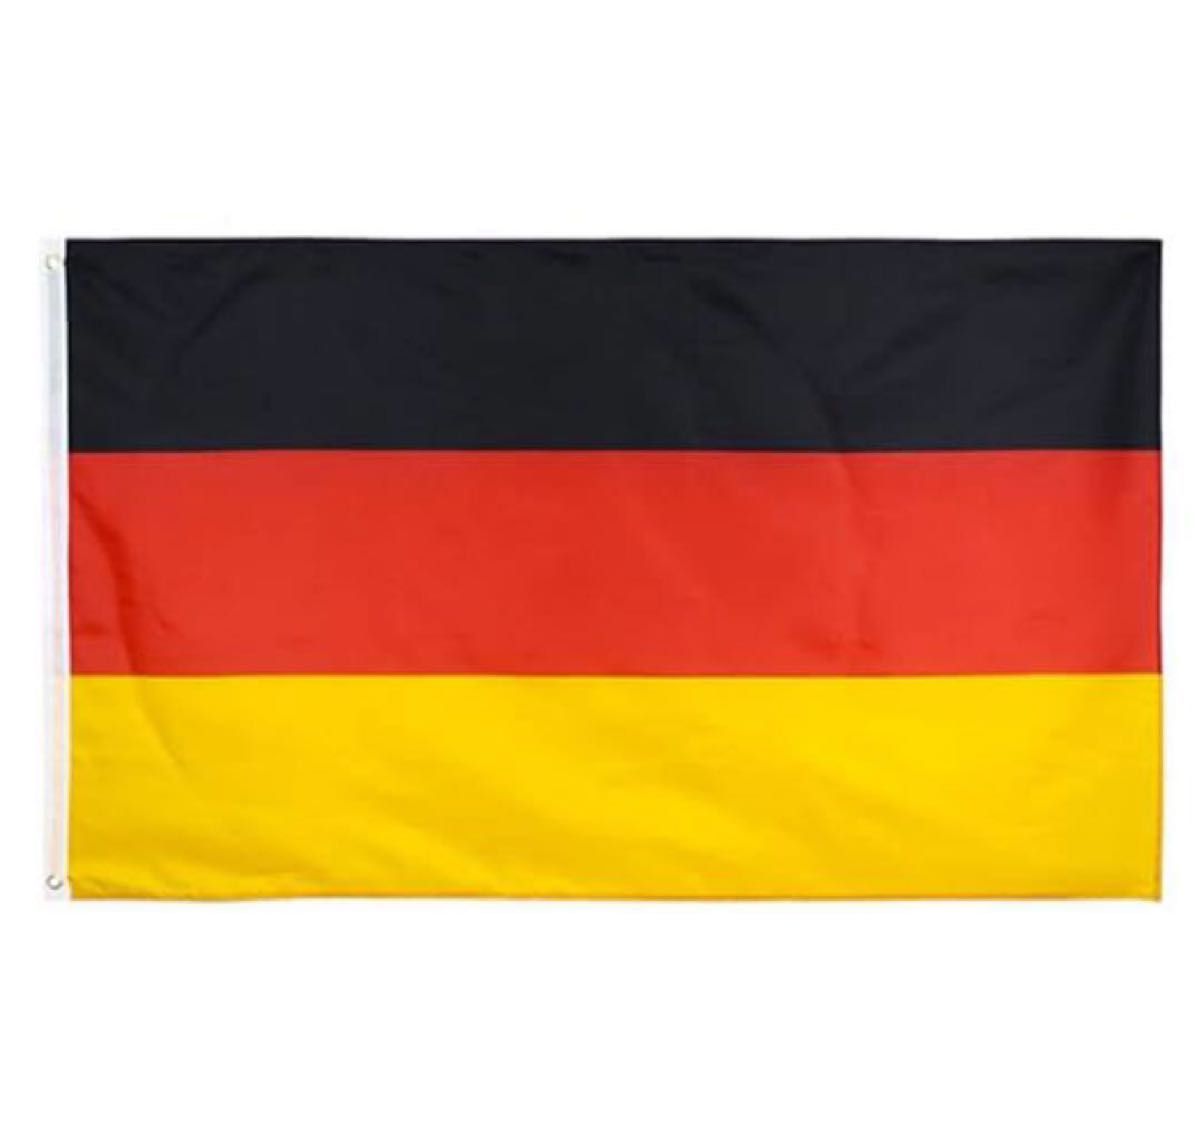 ★1点のみ★ 国旗 ドイツ ドイツ国旗 応援 応援グッズ サッカー 留め具付き インテリア サポーターグッズ 